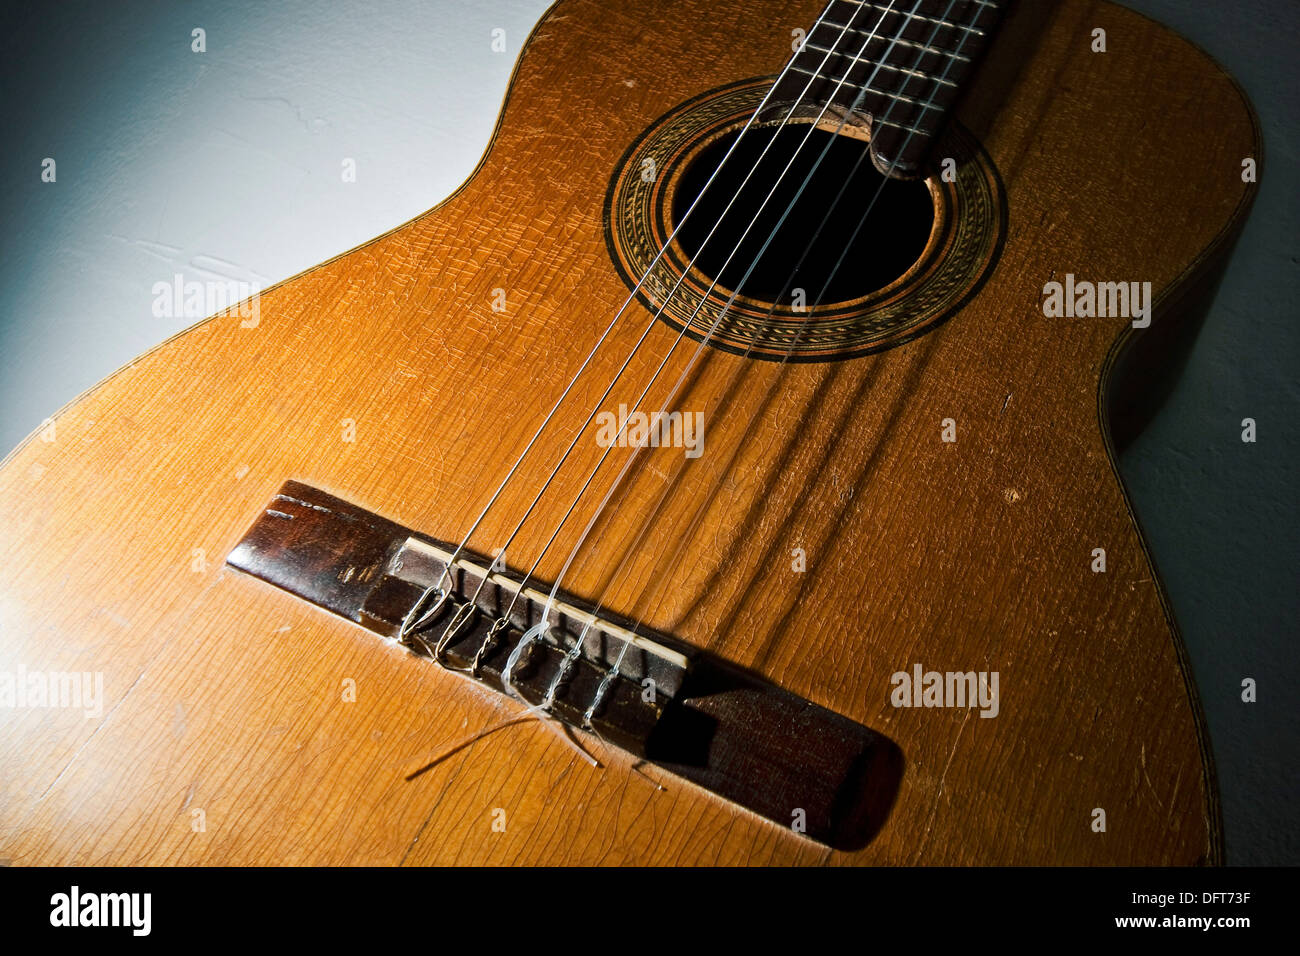 detalle de guitarra española Stock Photo